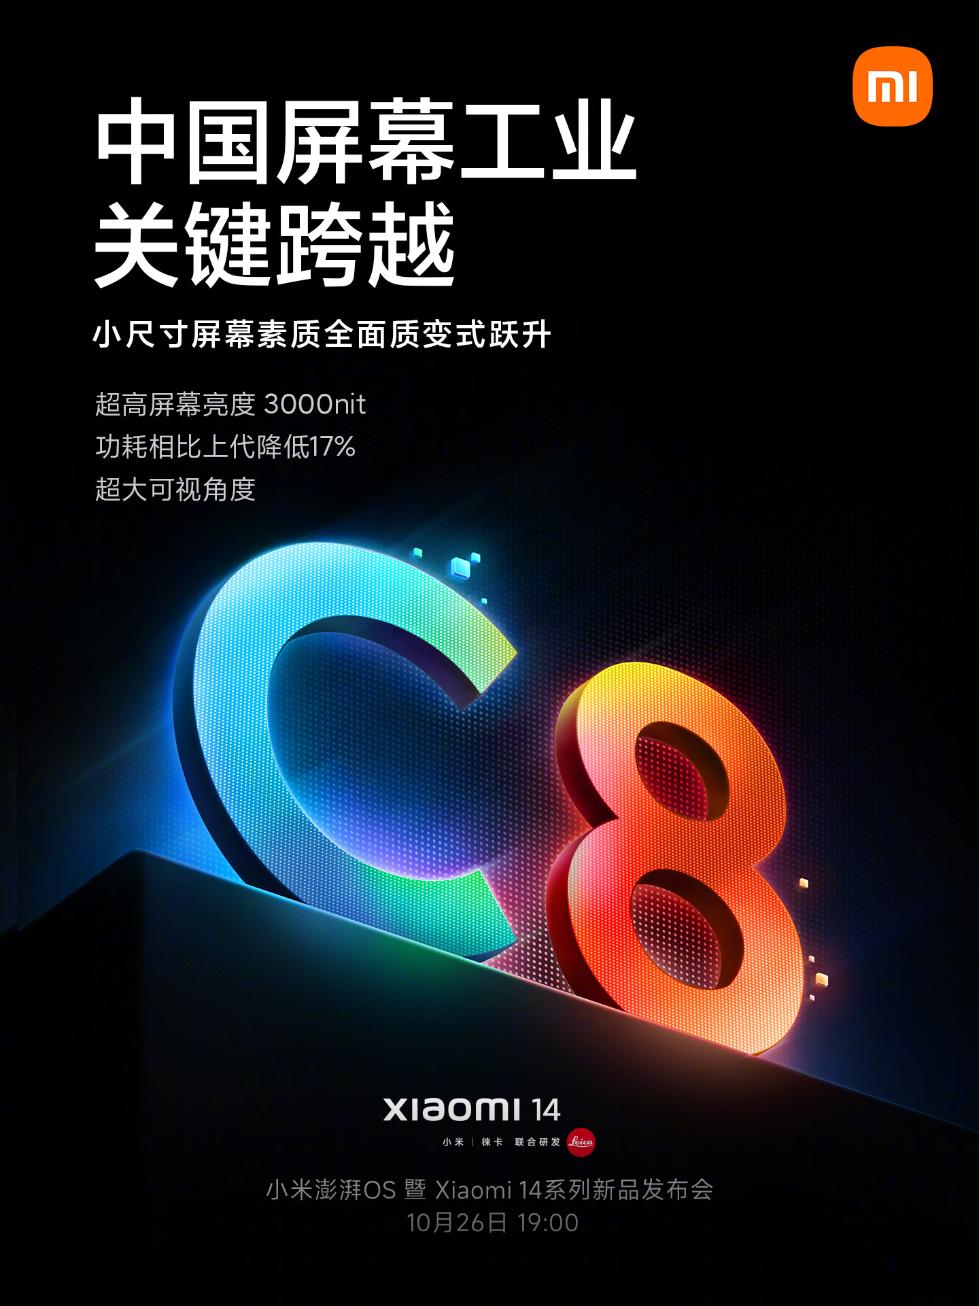 网易《逆水寒》手游率先适配骁龙8Gen3 同时支持光追、GI、超级分辨率 - 配骁高通官方宣布